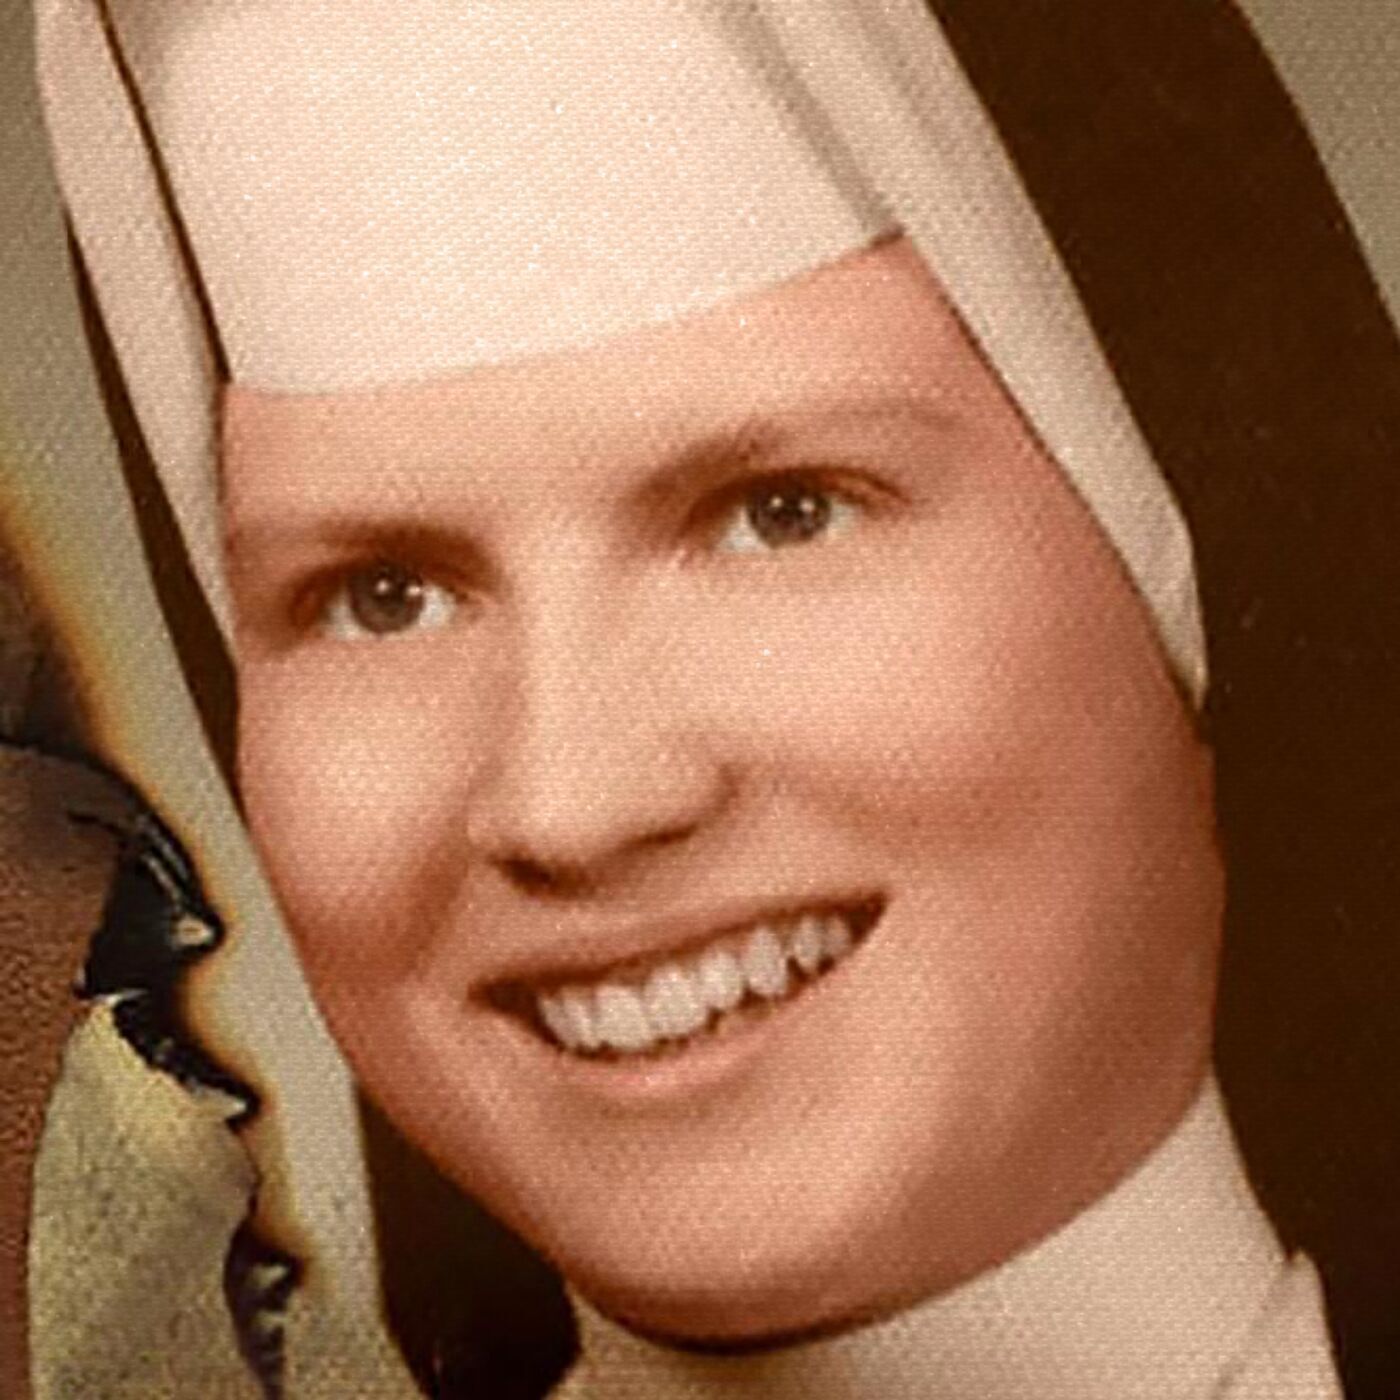 S2 Ep49: Sister Cathy, Beyond the Veil – A Nun’s Choice, Part 2